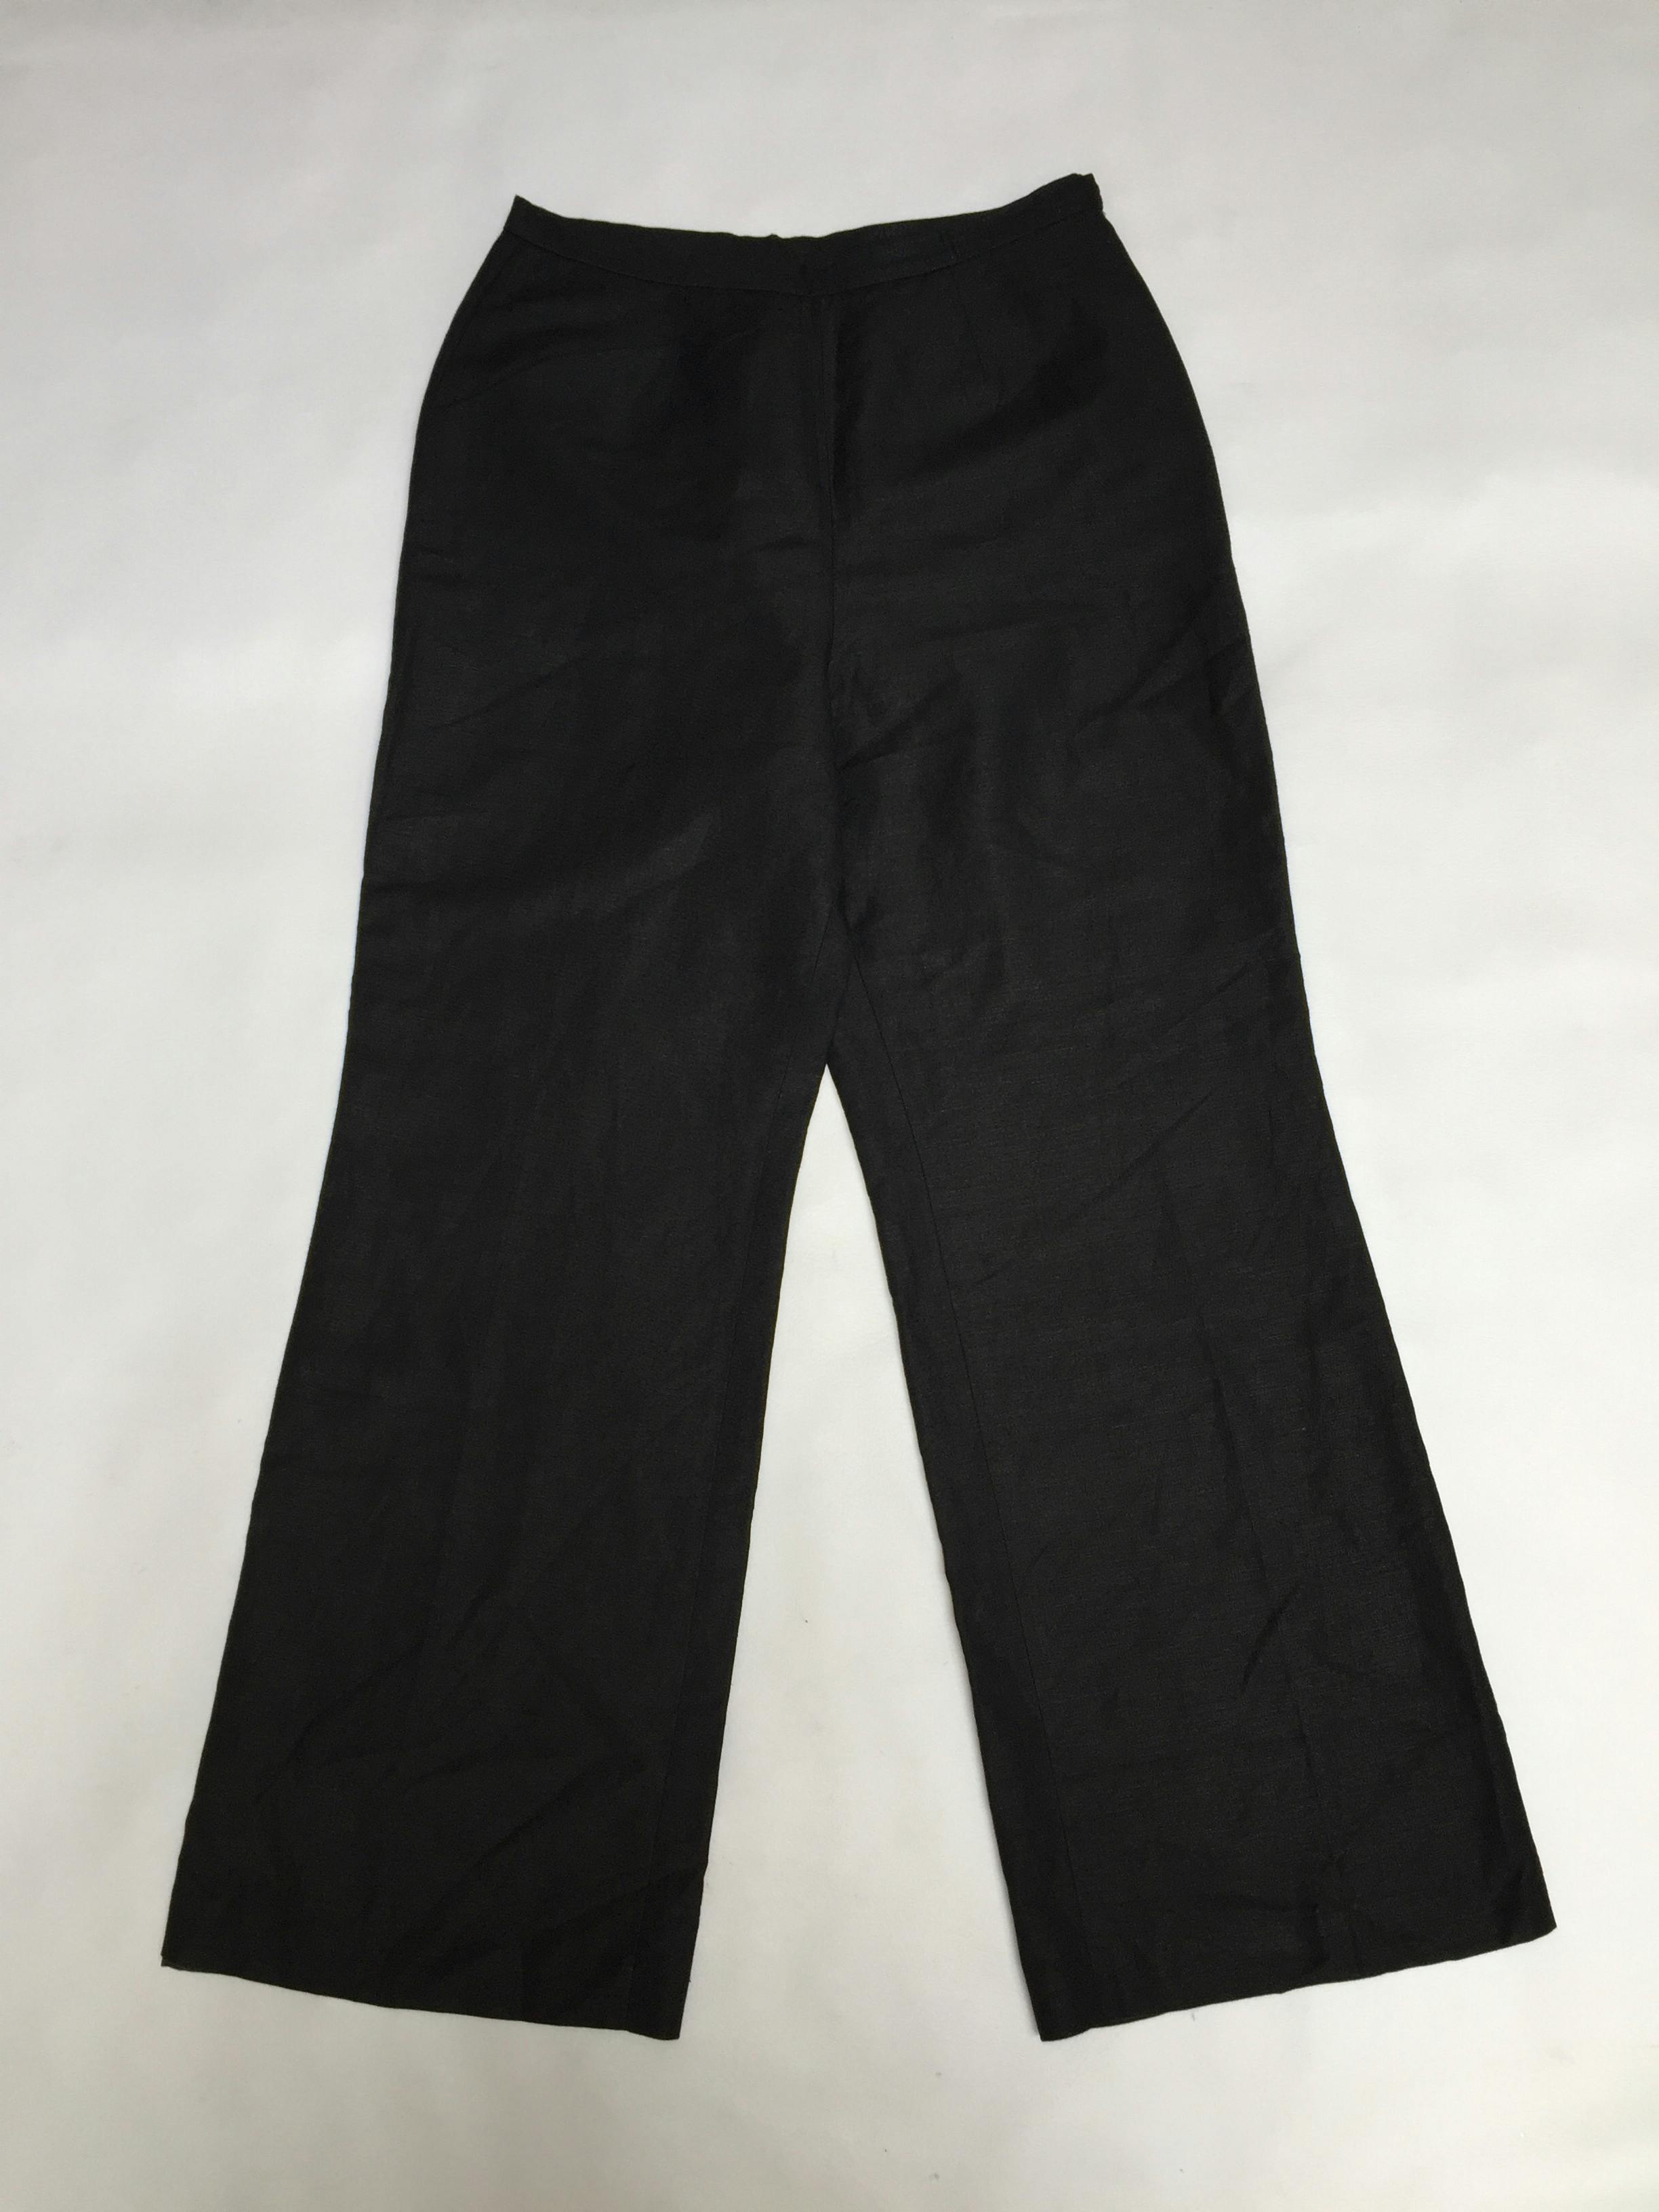 Pantalón vintage LeSuit, a la cintura, pierna recta, negro tipo sastre, 55% lino 45% rayon, forrado, con cierre lateral. Como nuevo!
Talla M